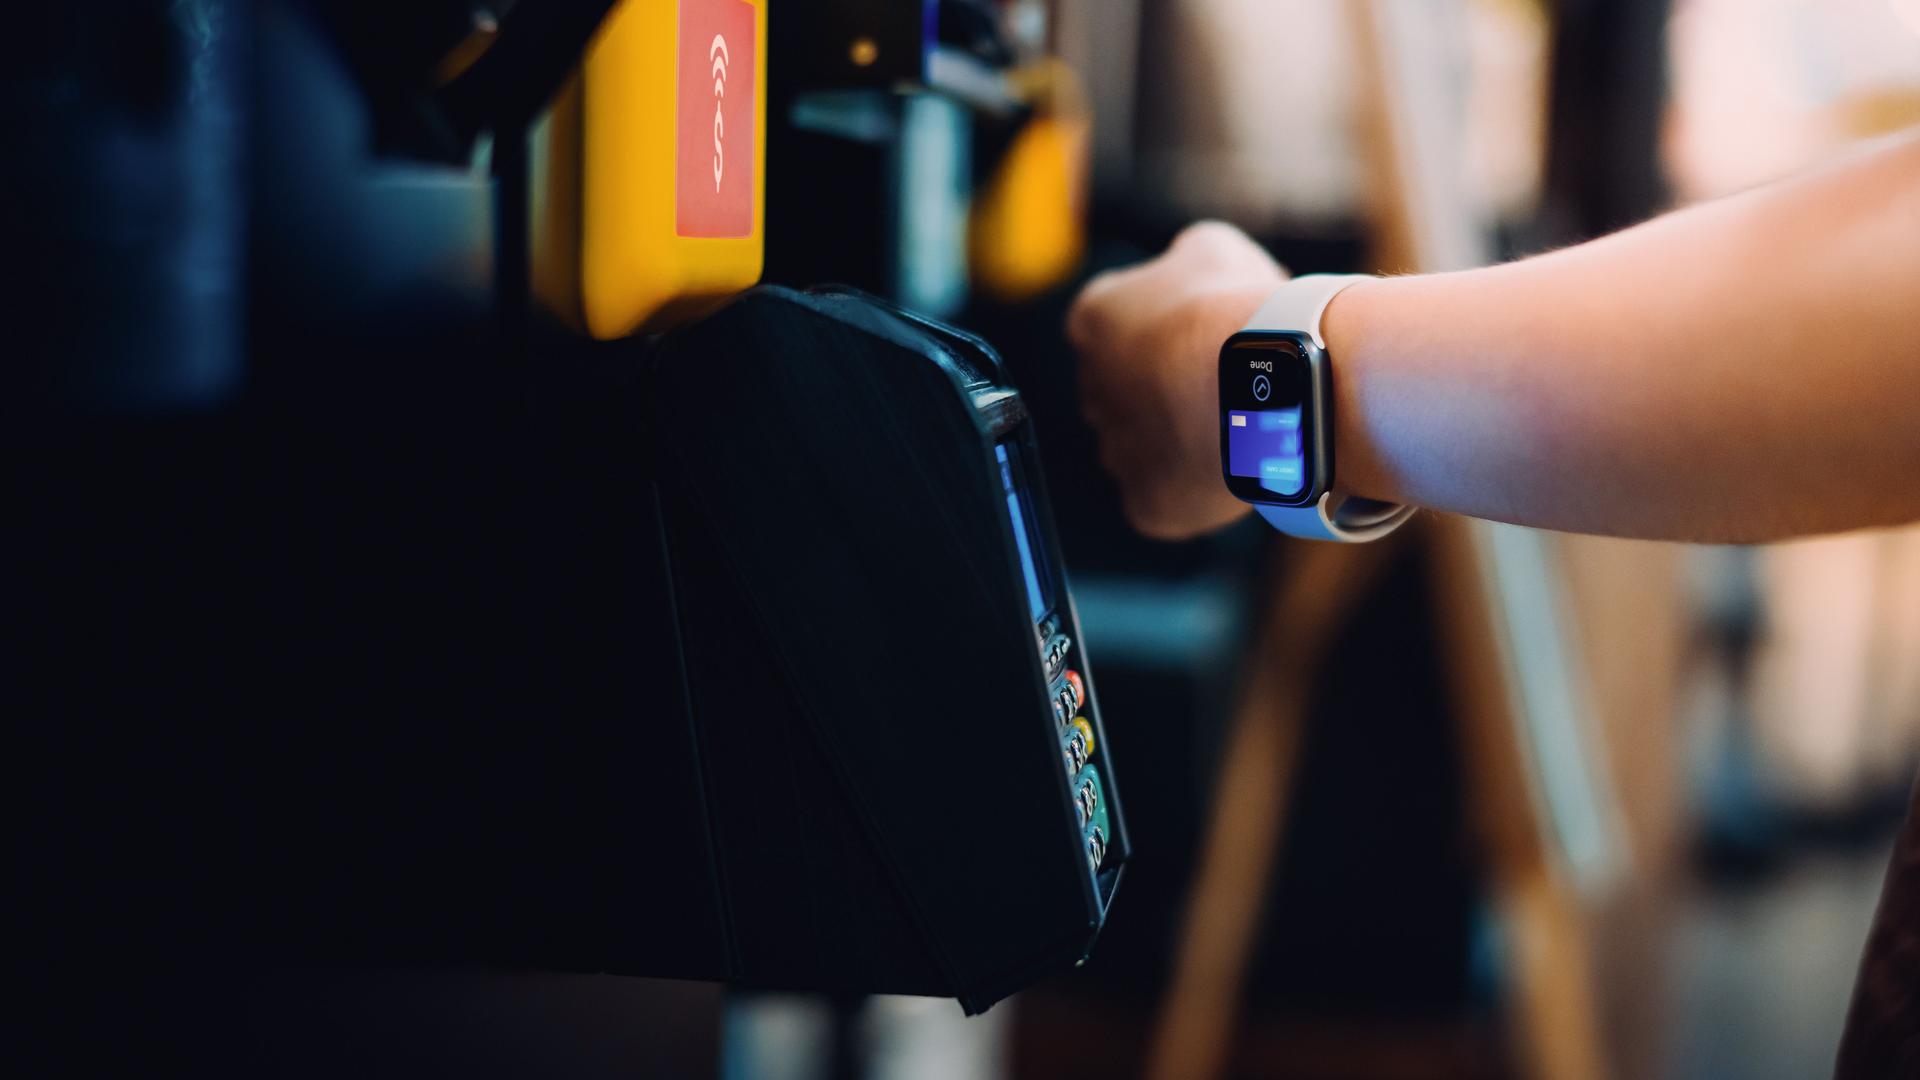 Nahaufnahme eines Handgelenks mit Smartwatch, die zum Bezahlen verwendet wird.